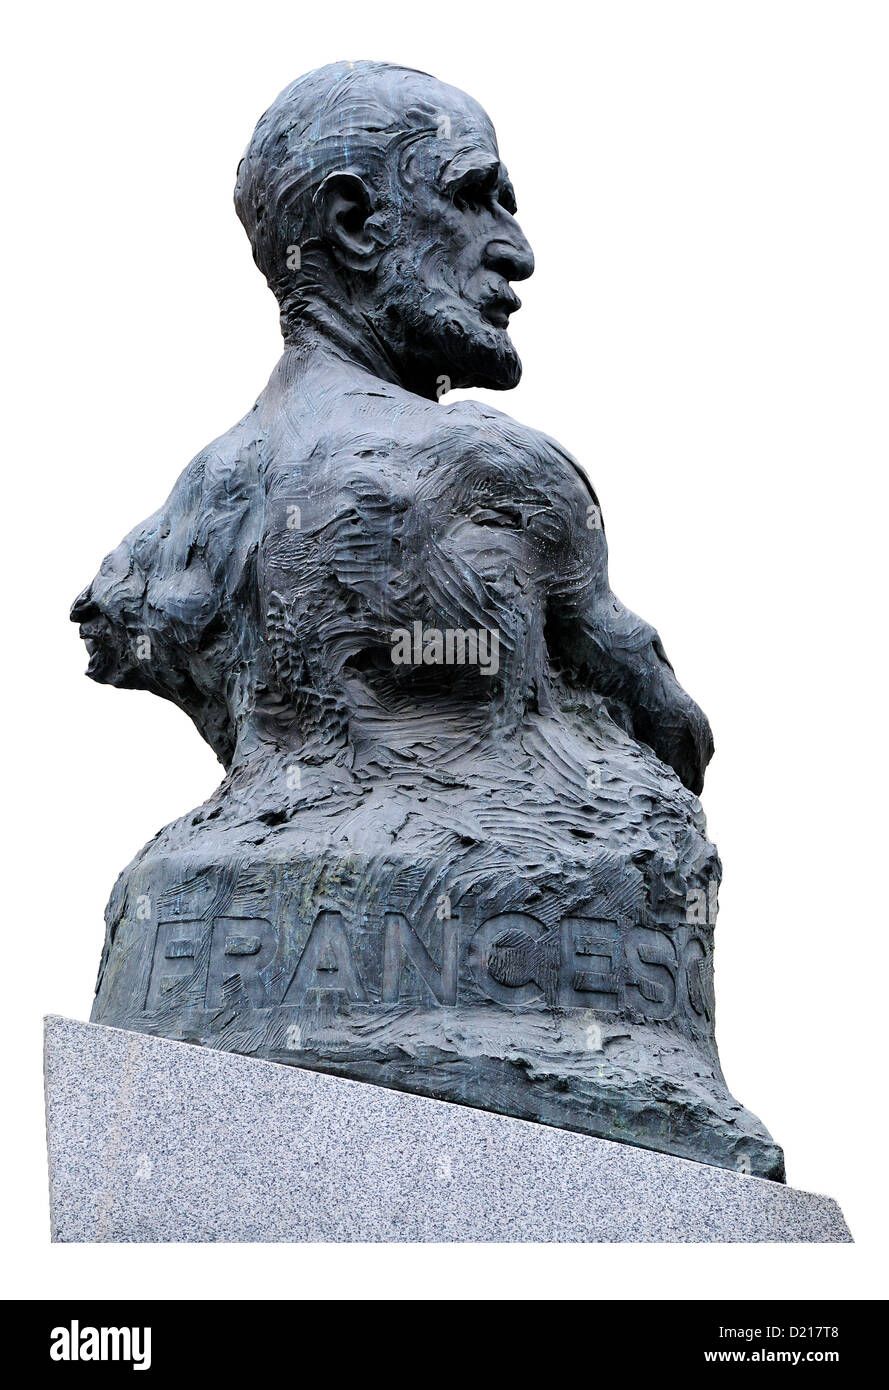 Barcelona, Catalonia, Spain. Bust of Francesc Cambó i Batlle (Francesc Cambó: 1876-1947 - Catalan politician) on Via Laietana Stock Photo